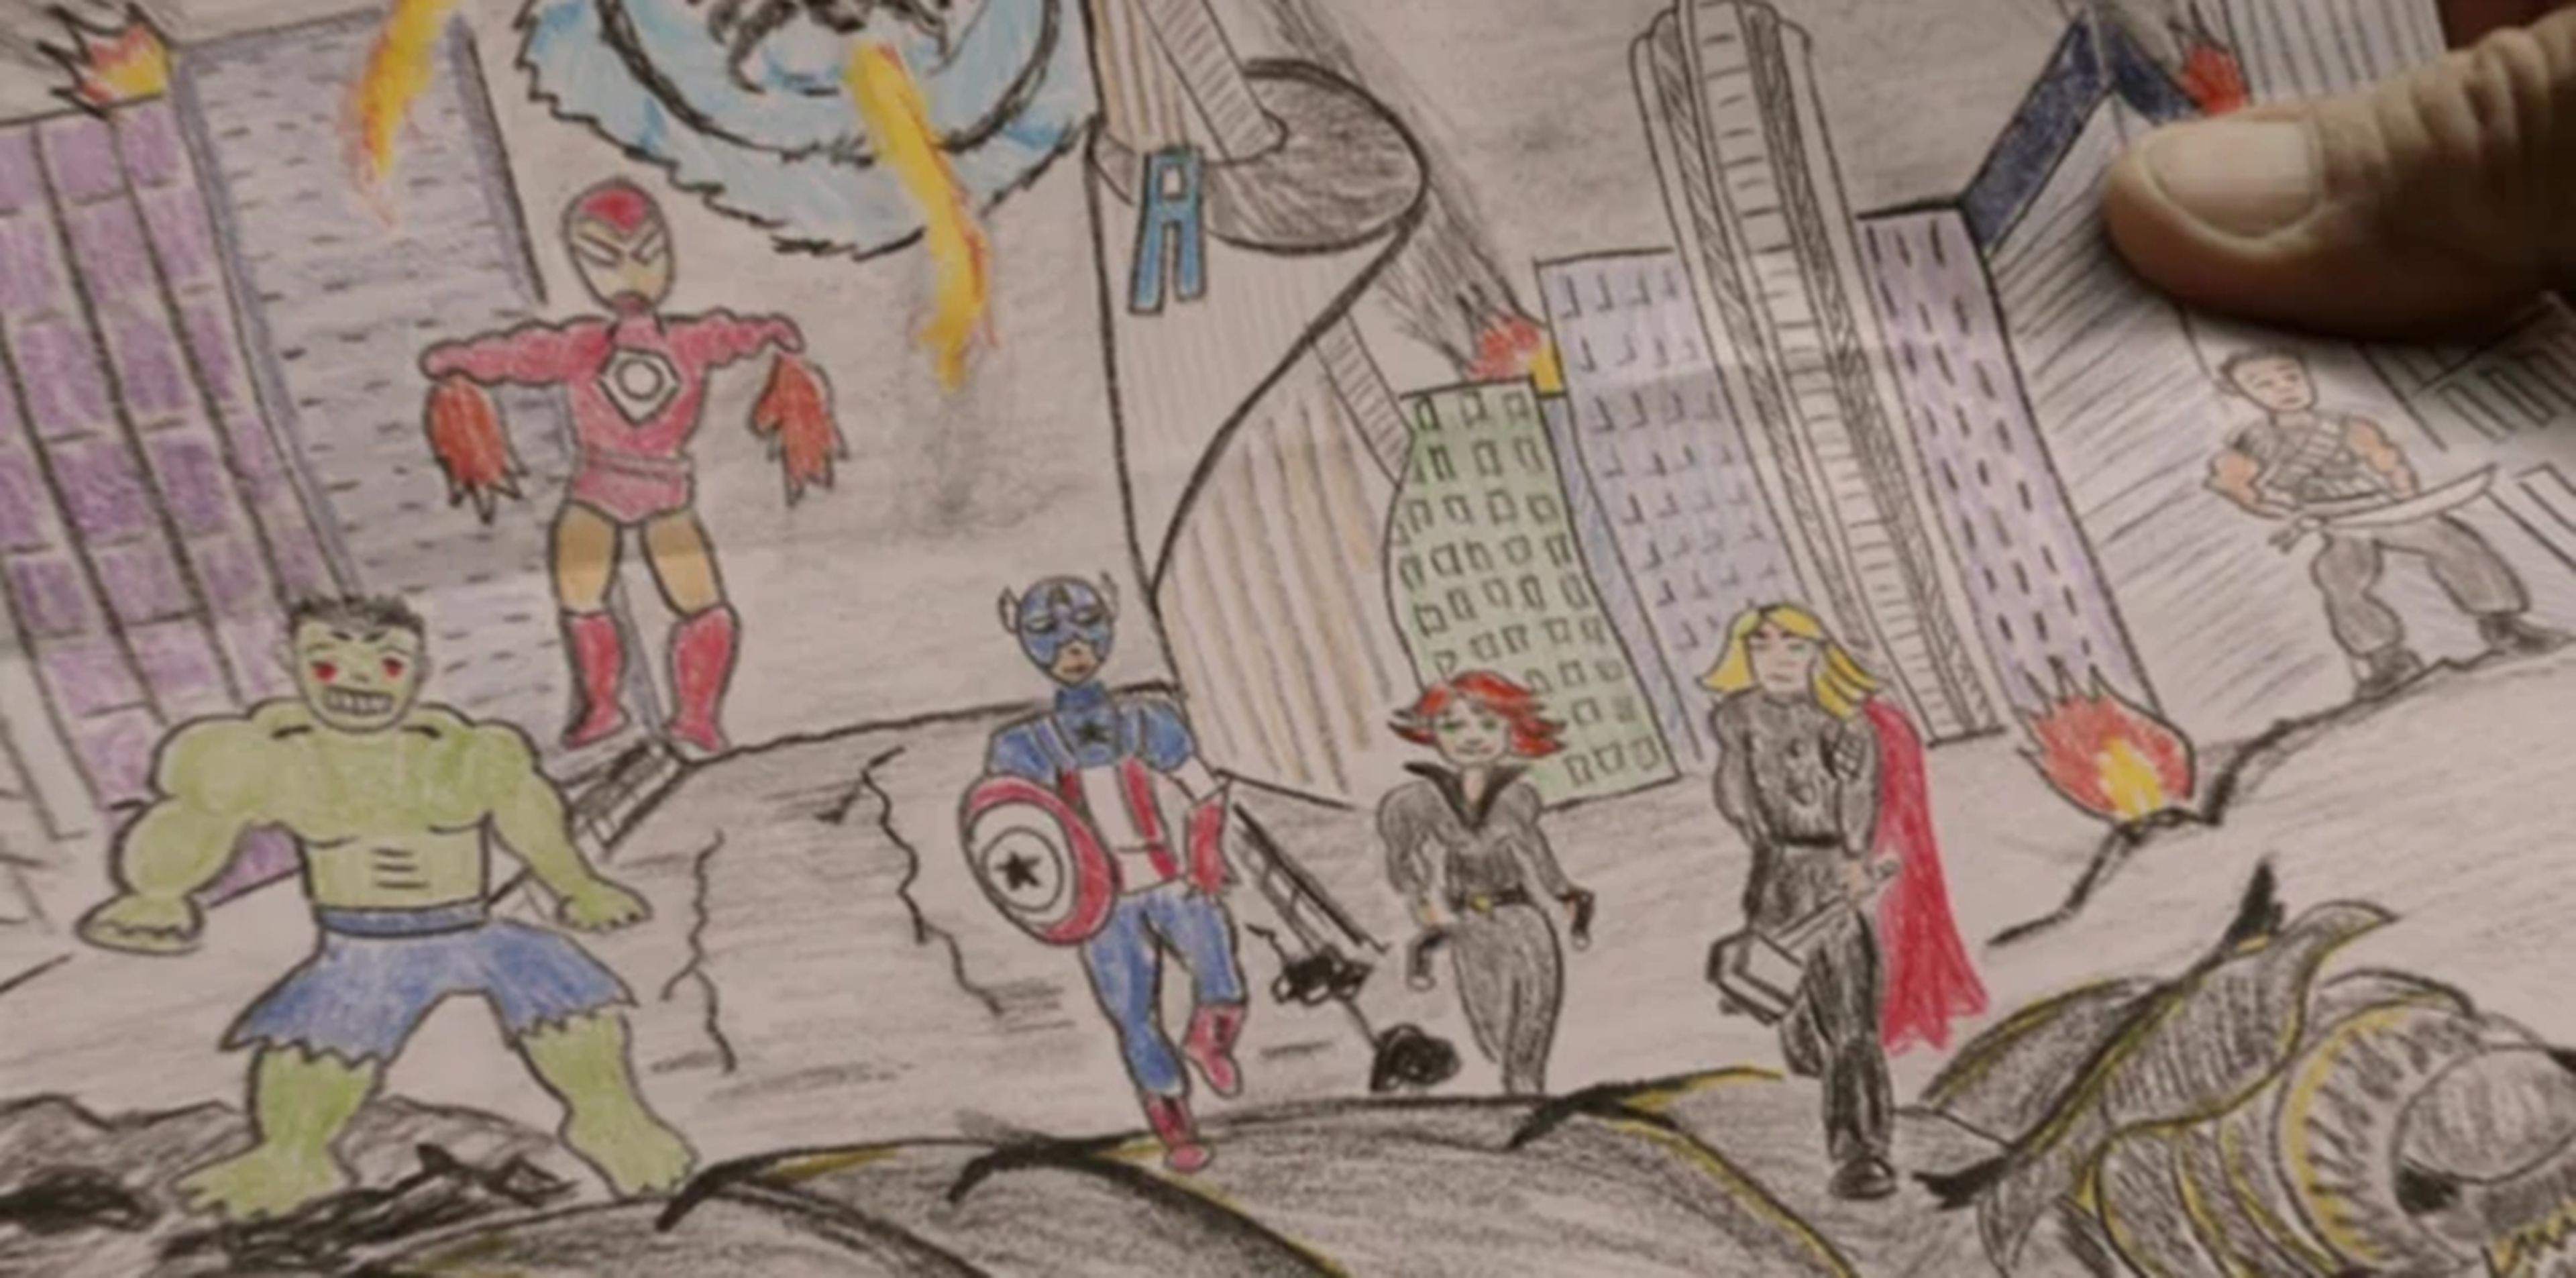 La referencia a Ronin en el dibujo de Los Vengadores en Spider-Man: Homecoming